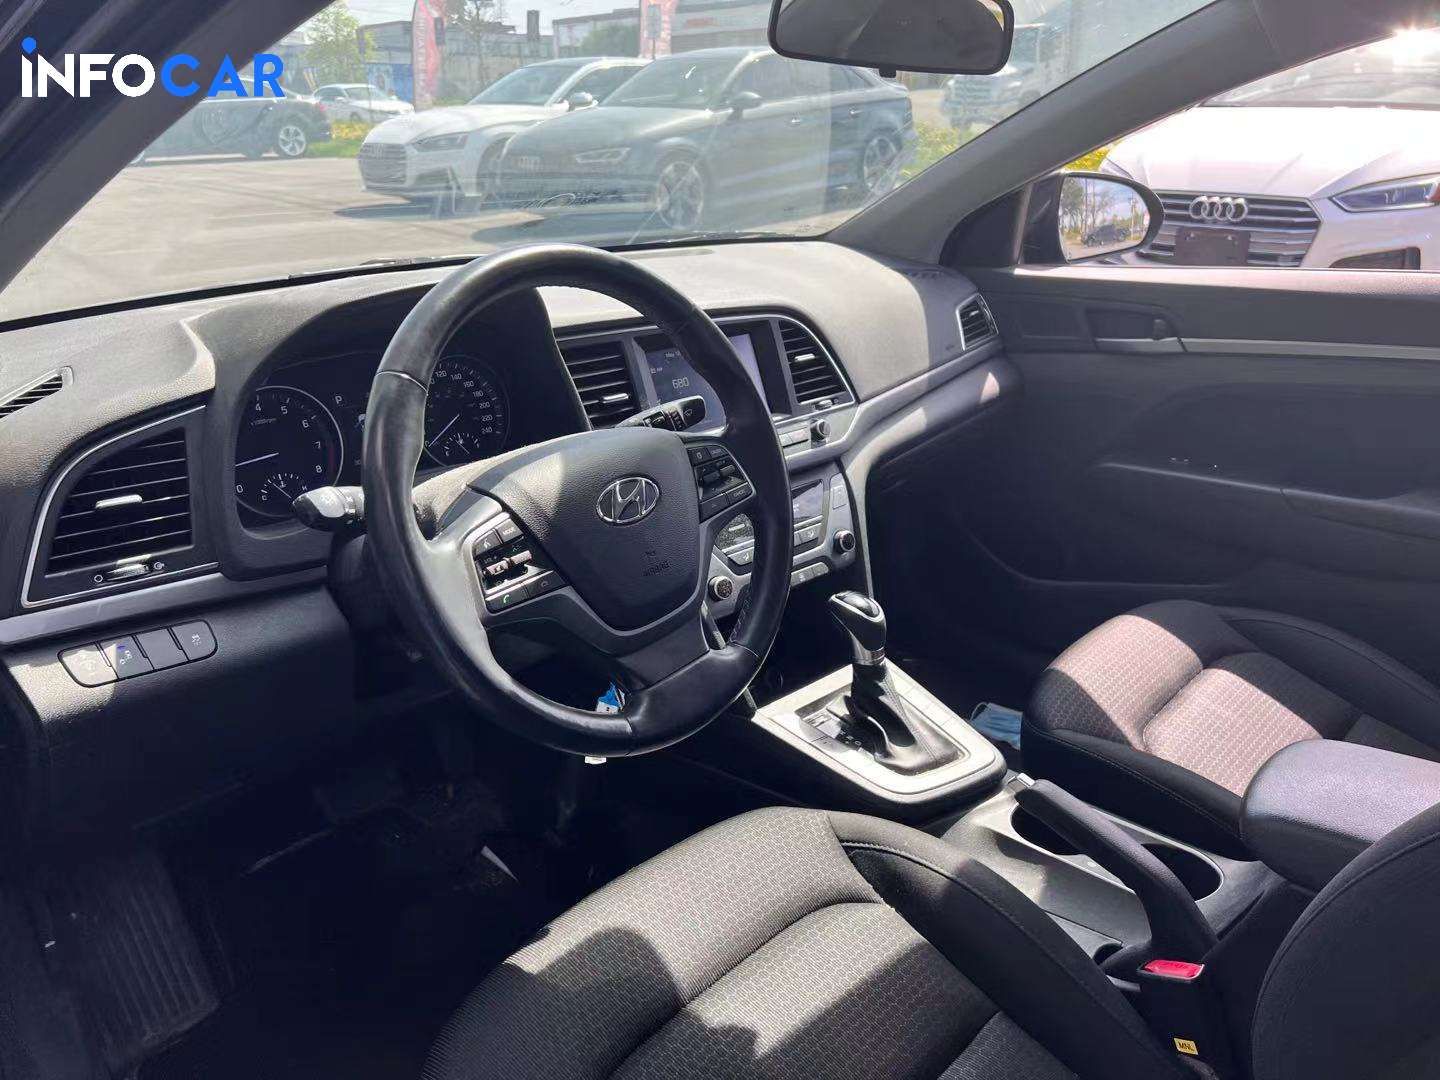 2018 Hyundai Elantra GL - INFOCAR - Toronto Auto Trading Platform